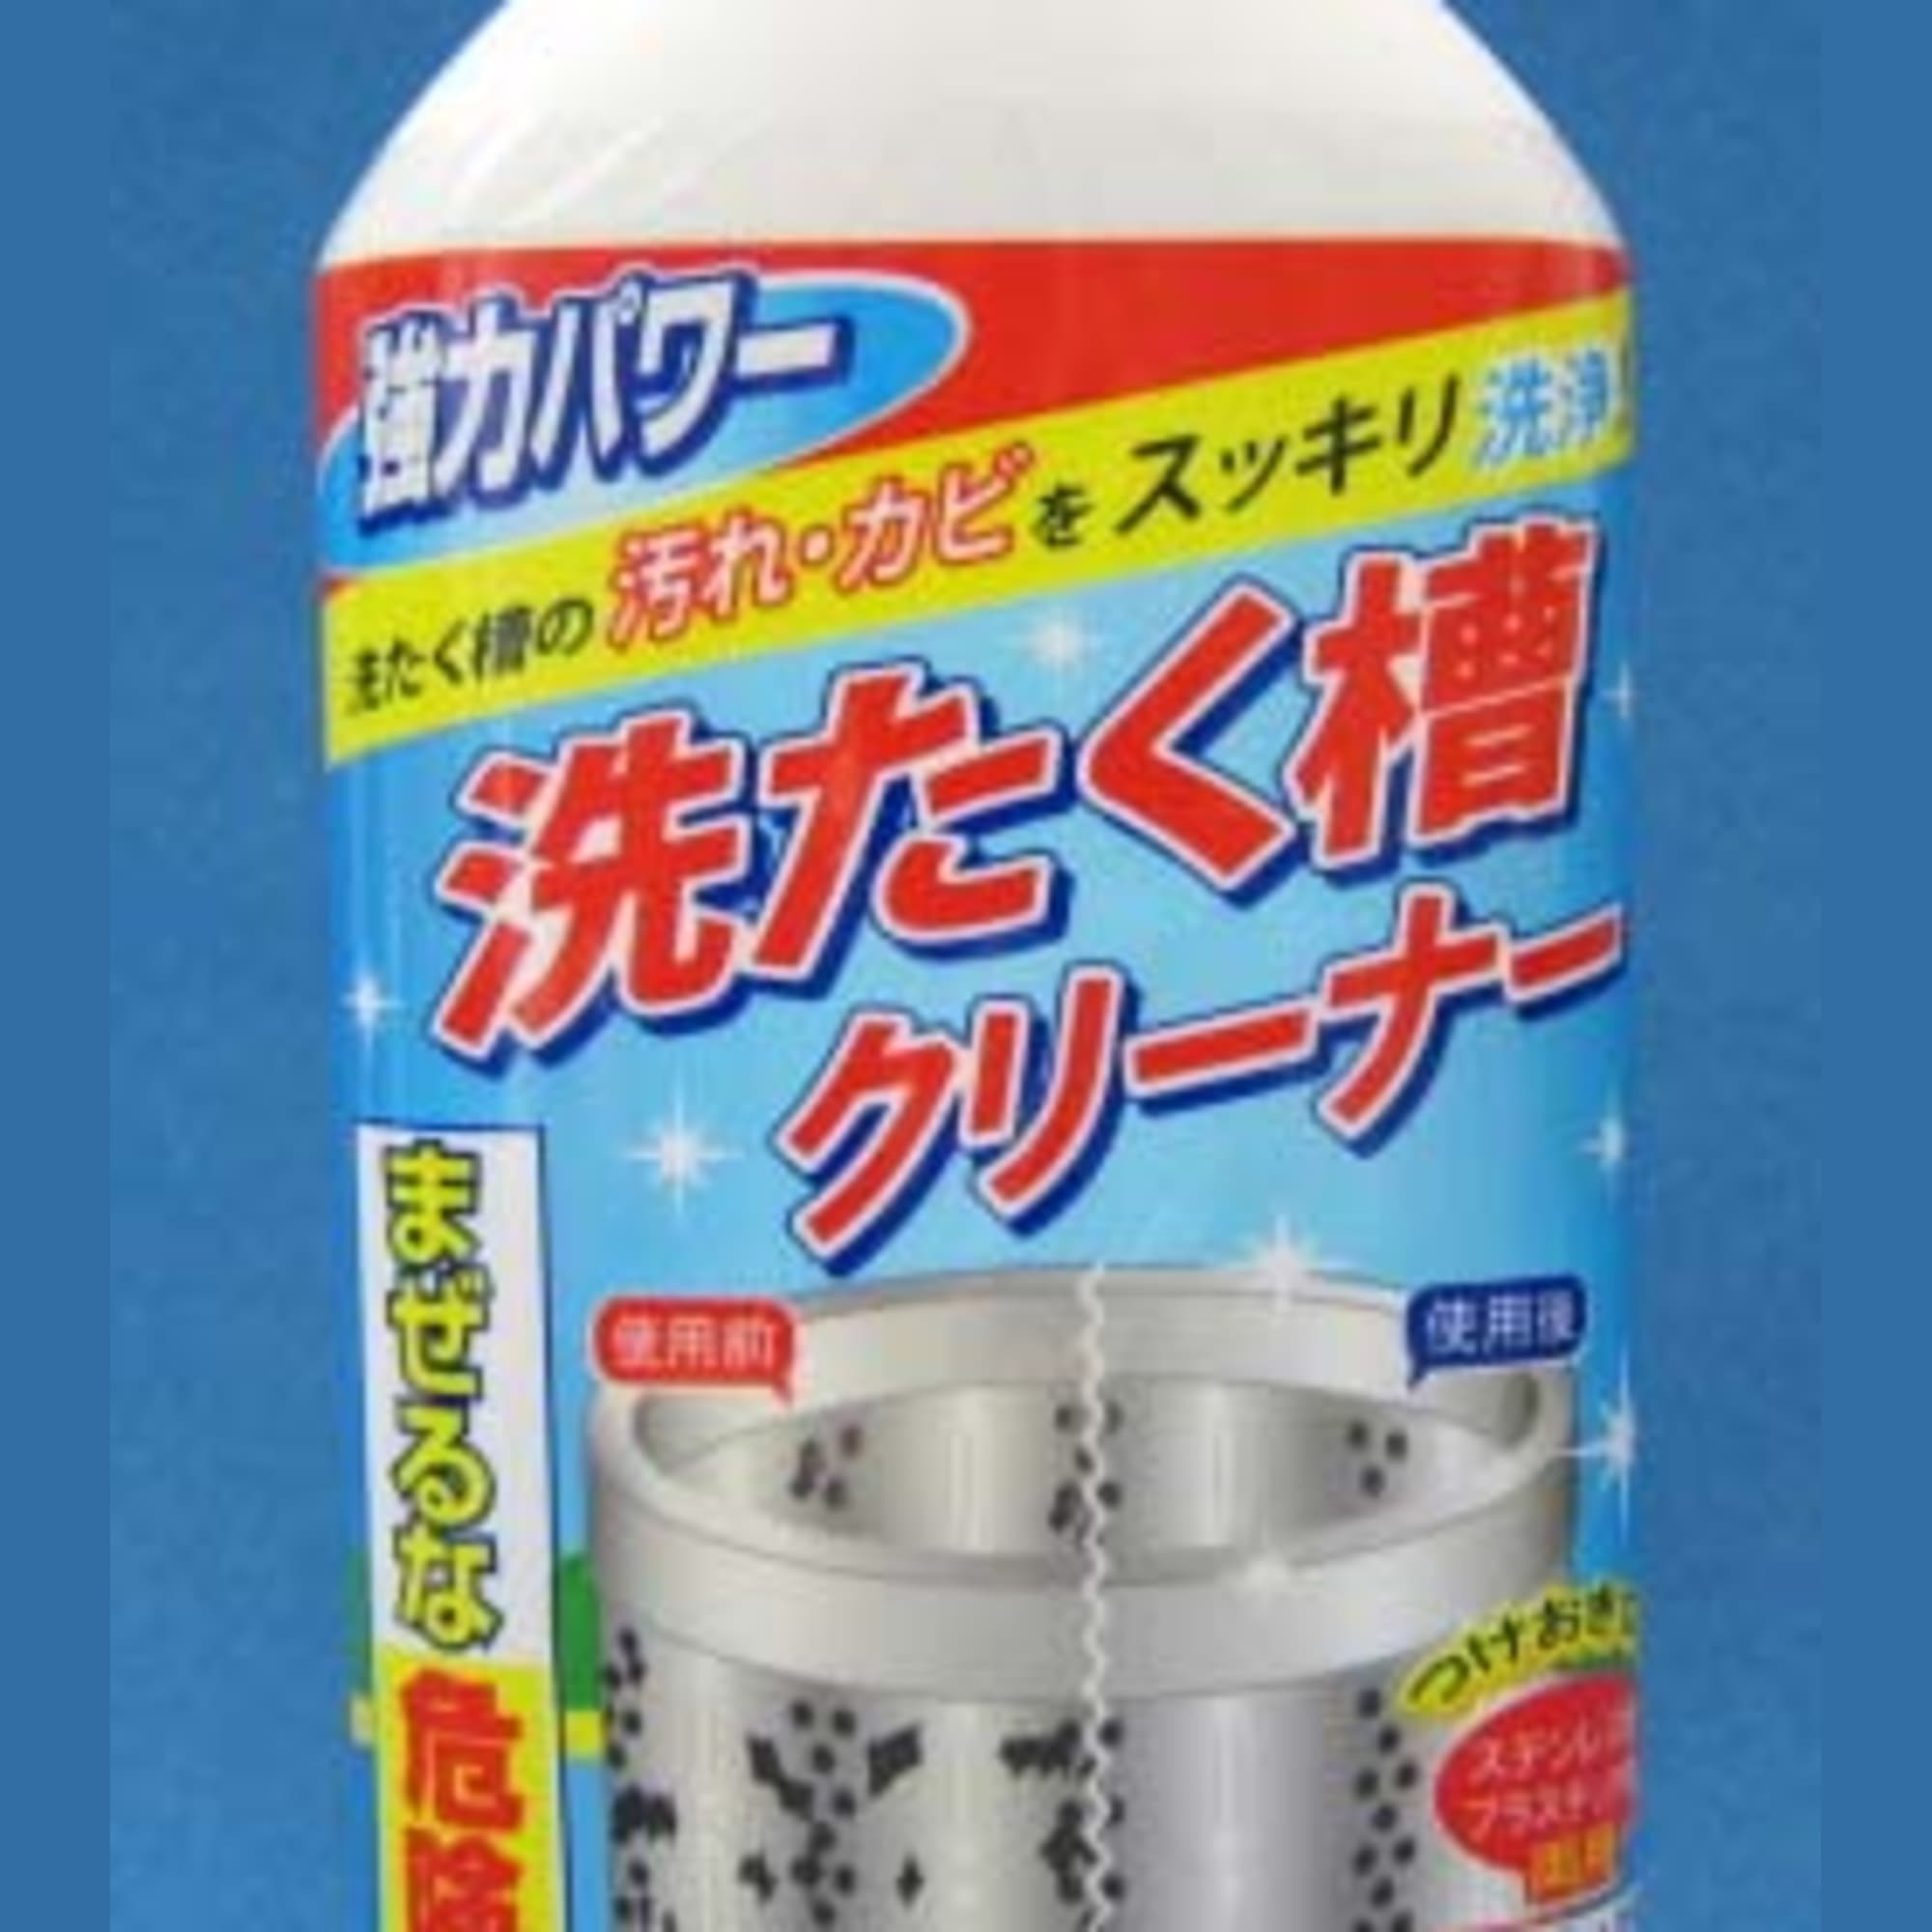 Chai nước tẩy lồng máy giặt 400ml KYOWA nội địa Nhật Bản